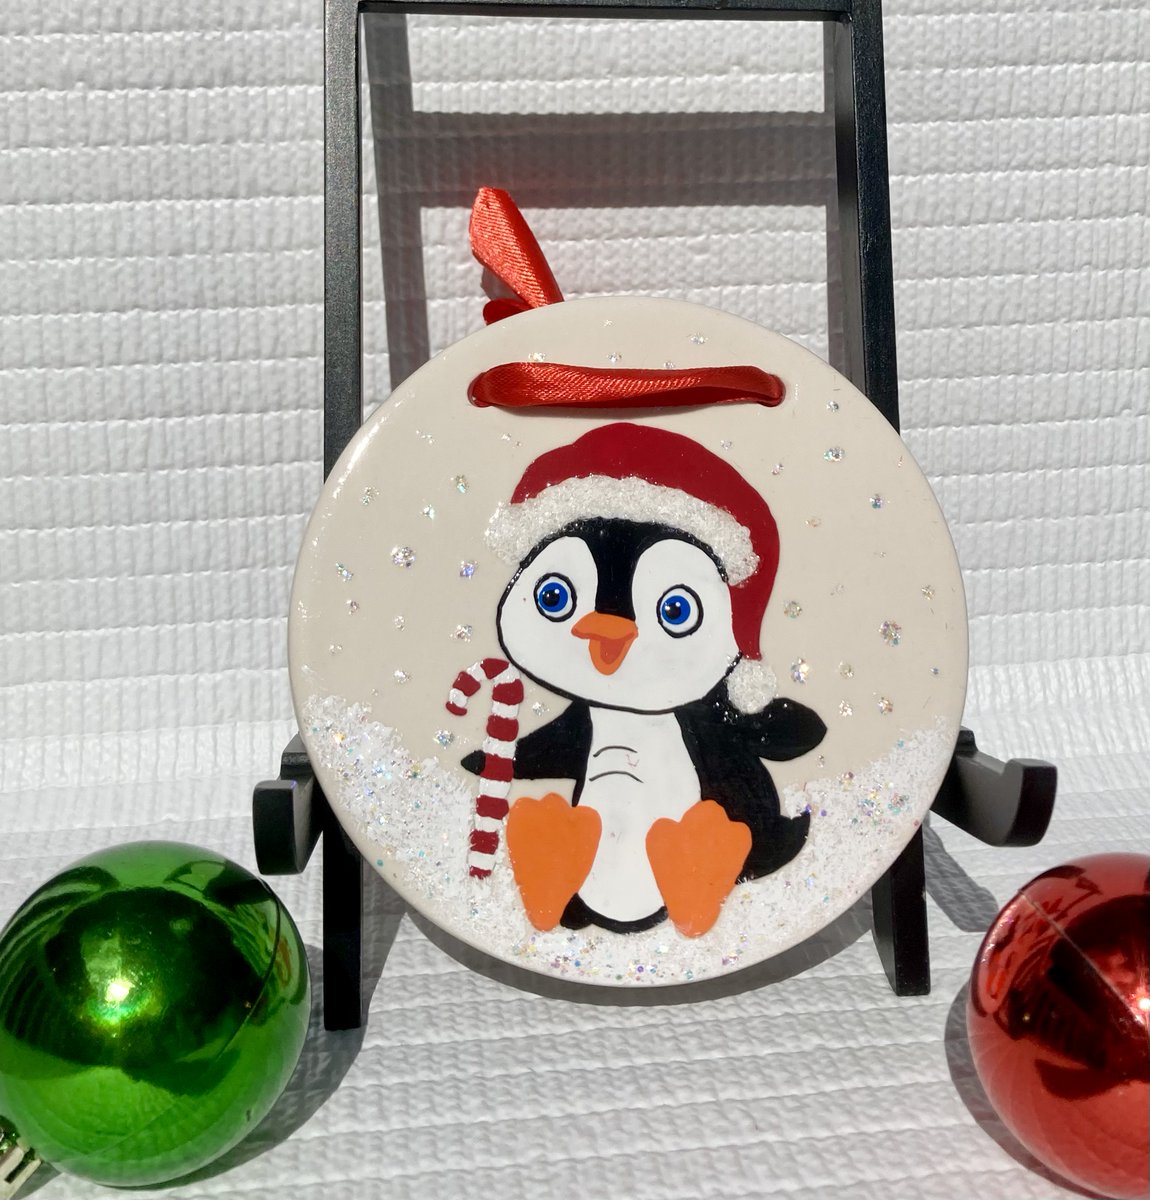 Penguin Christmas ornament etsy.com/listing/157743… #penguinornament #ceramicornament #christmasornament #SMILEtt23 #StockingStuffer #christmasdecoration #handpaintedornament